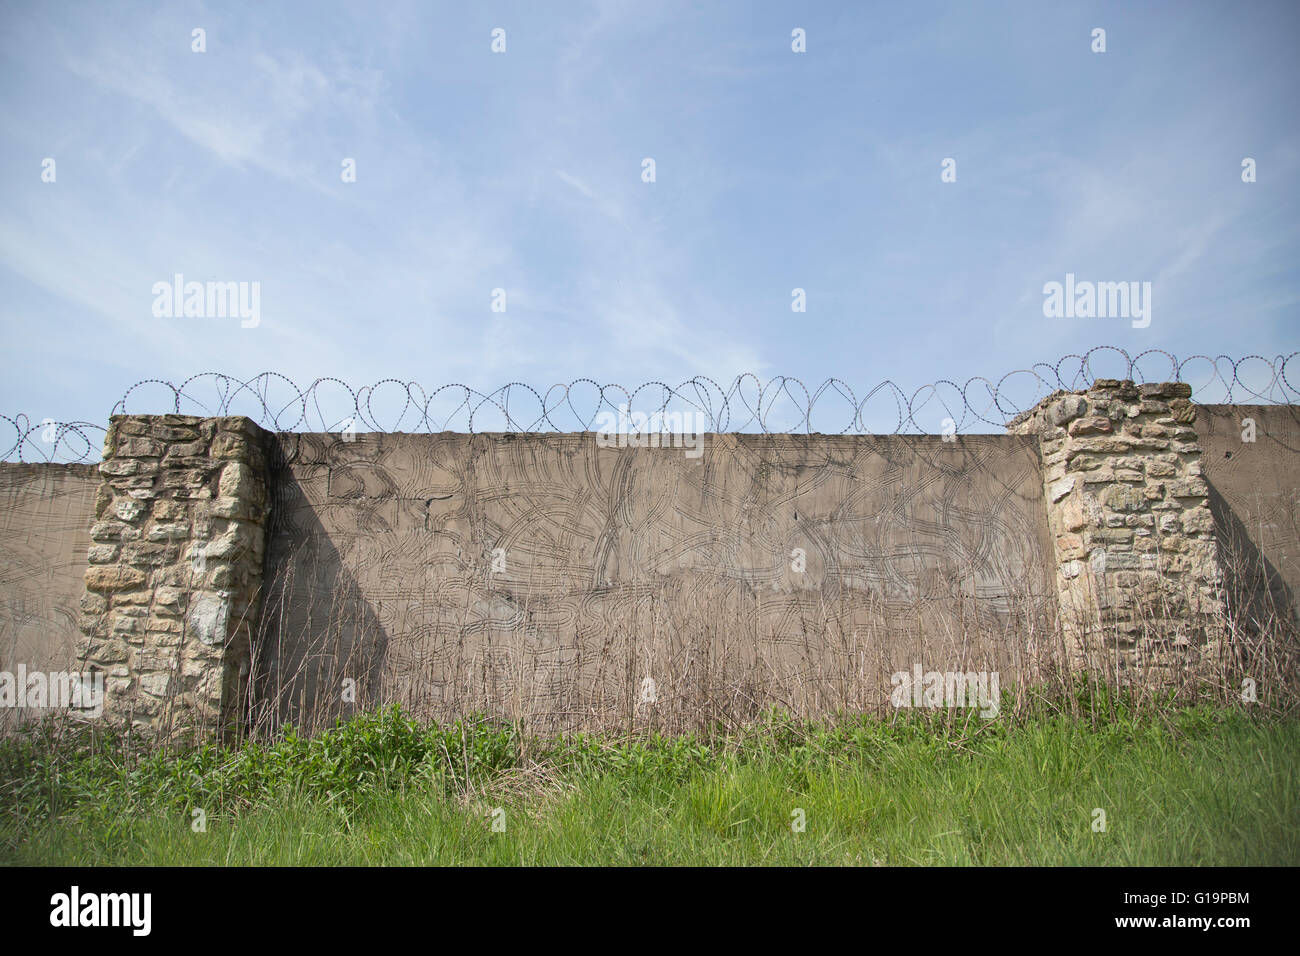 Mur de la prison avec du fil de fer barbelé Banque D'Images